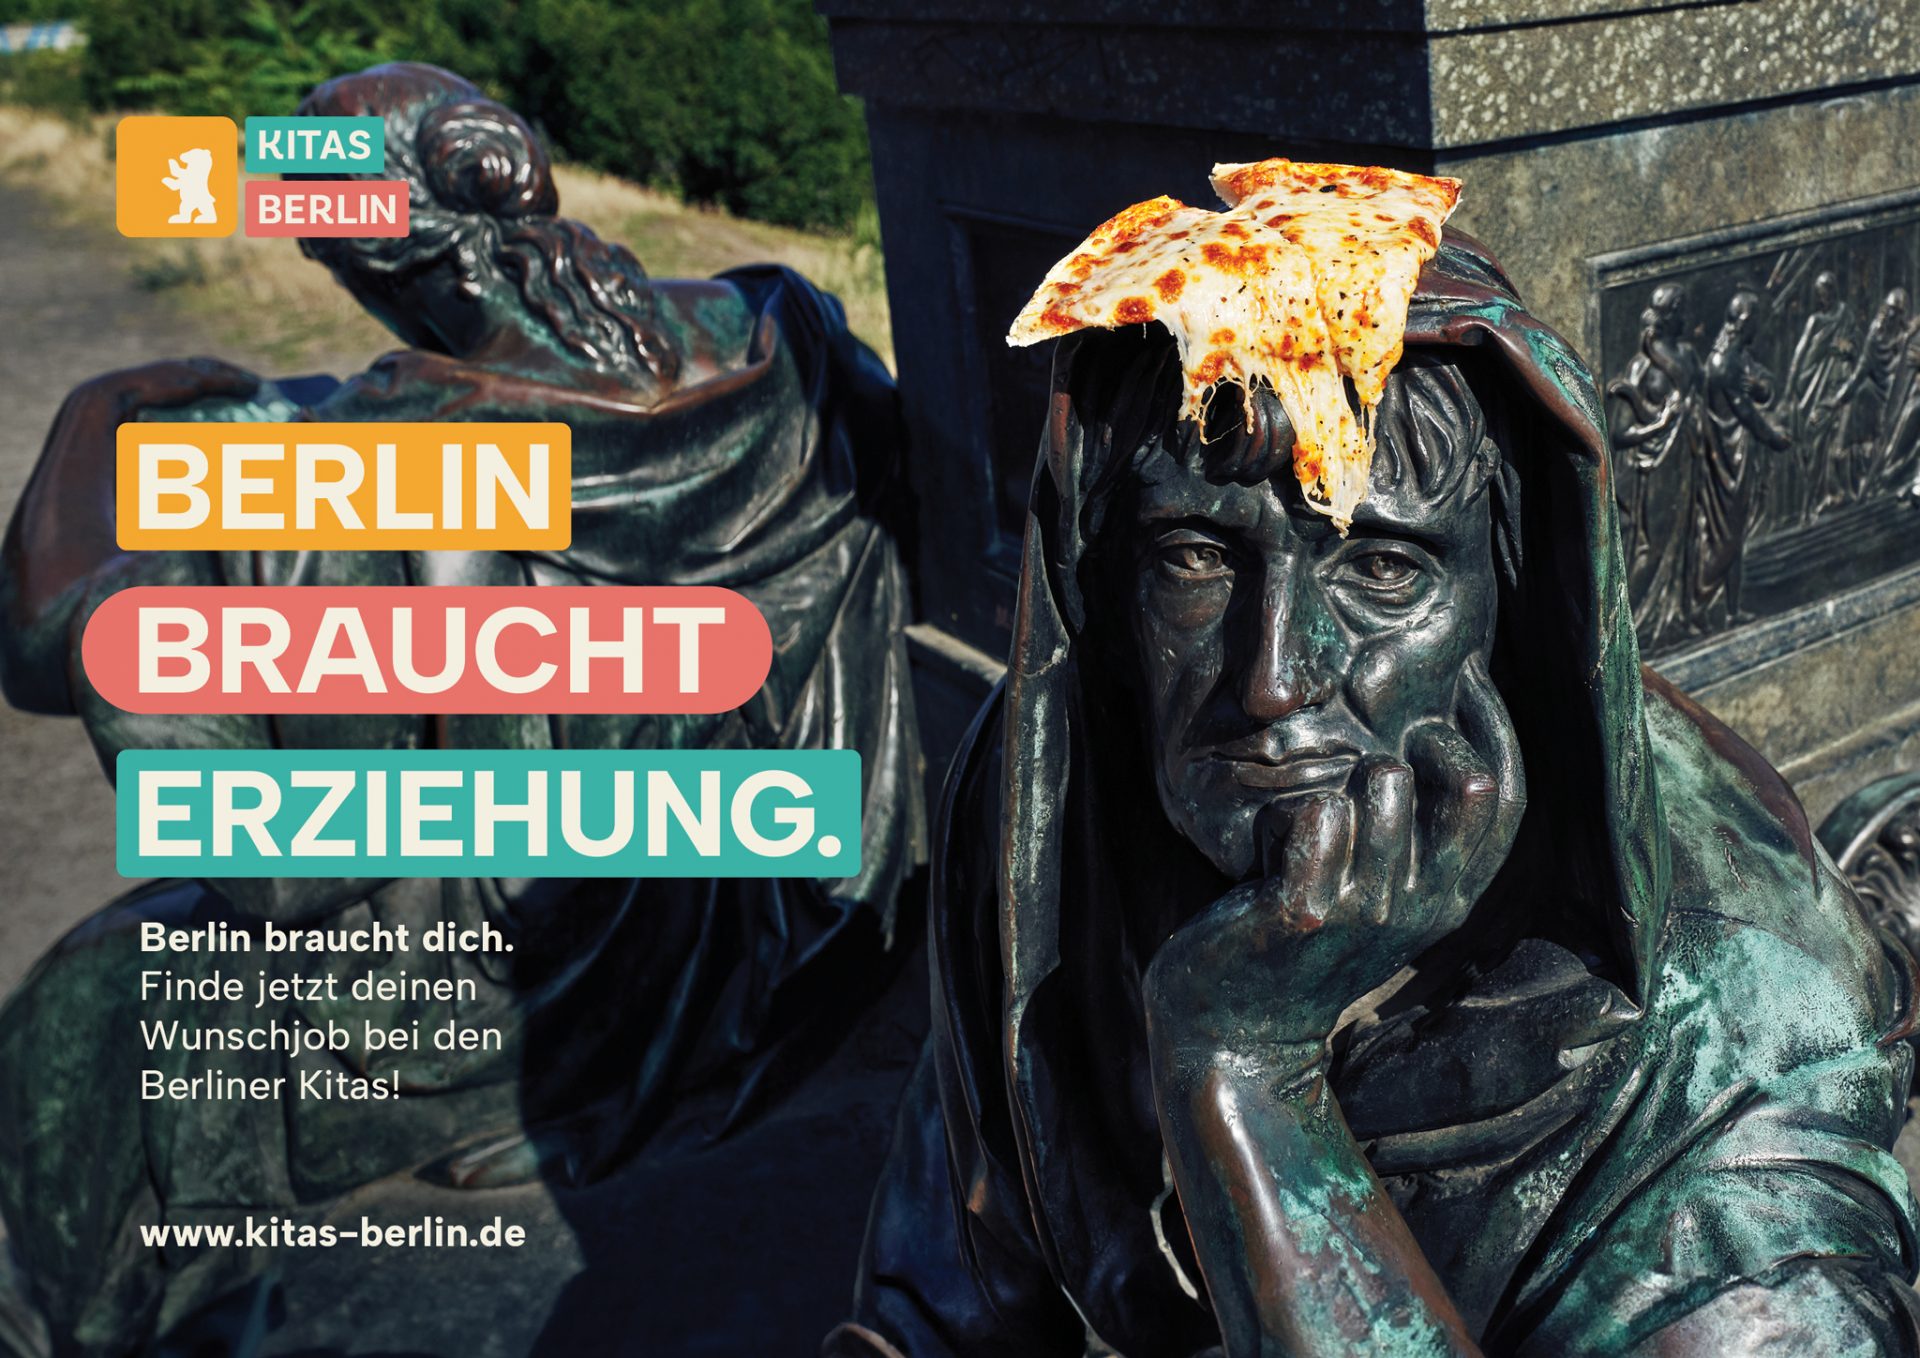 KitasBerlin_BerlinBrauchtErziehung_Motive_Pizza-1